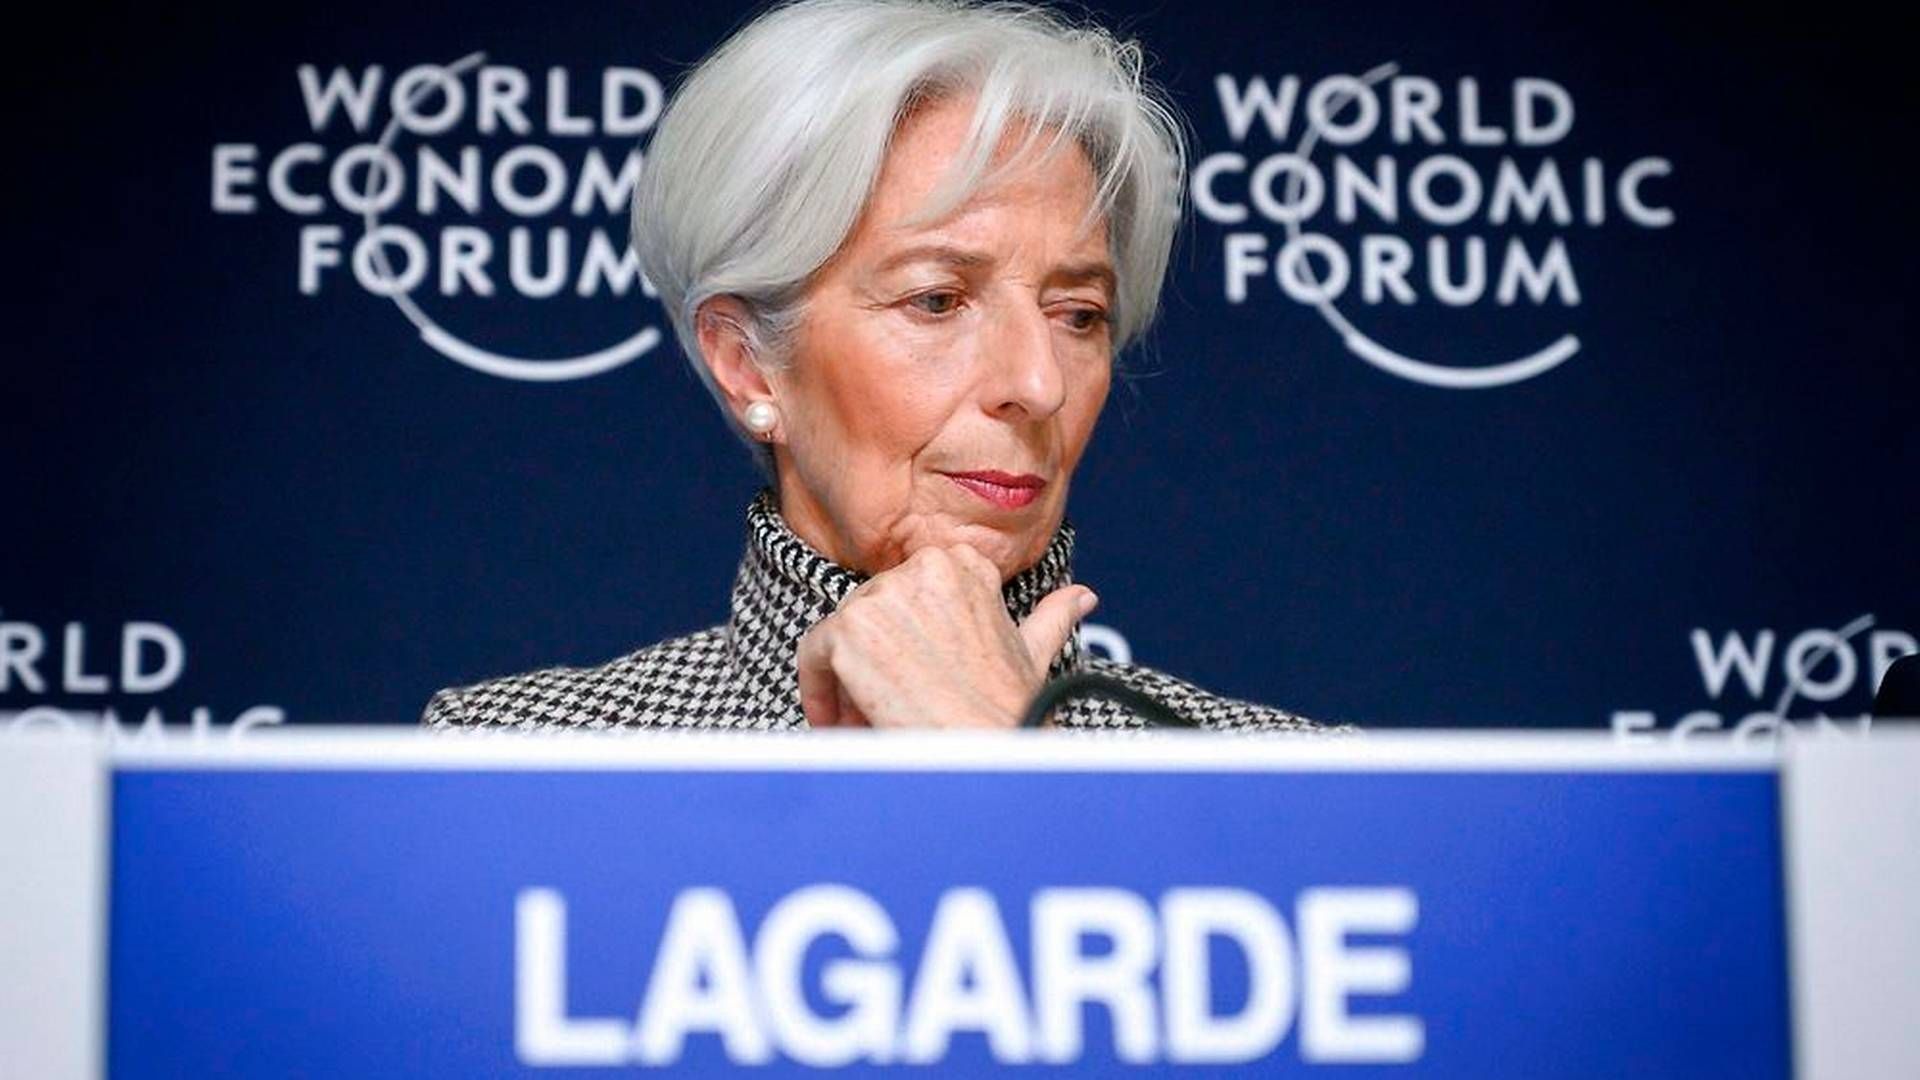 Direktøren for Den Internationale Valutafond (IMF), Christine Legarde, har præsenteret IMF's nedjustering af den forventede vækst. | Foto: Ritzau Scanpiz/AFP/Fabrice Coffrini